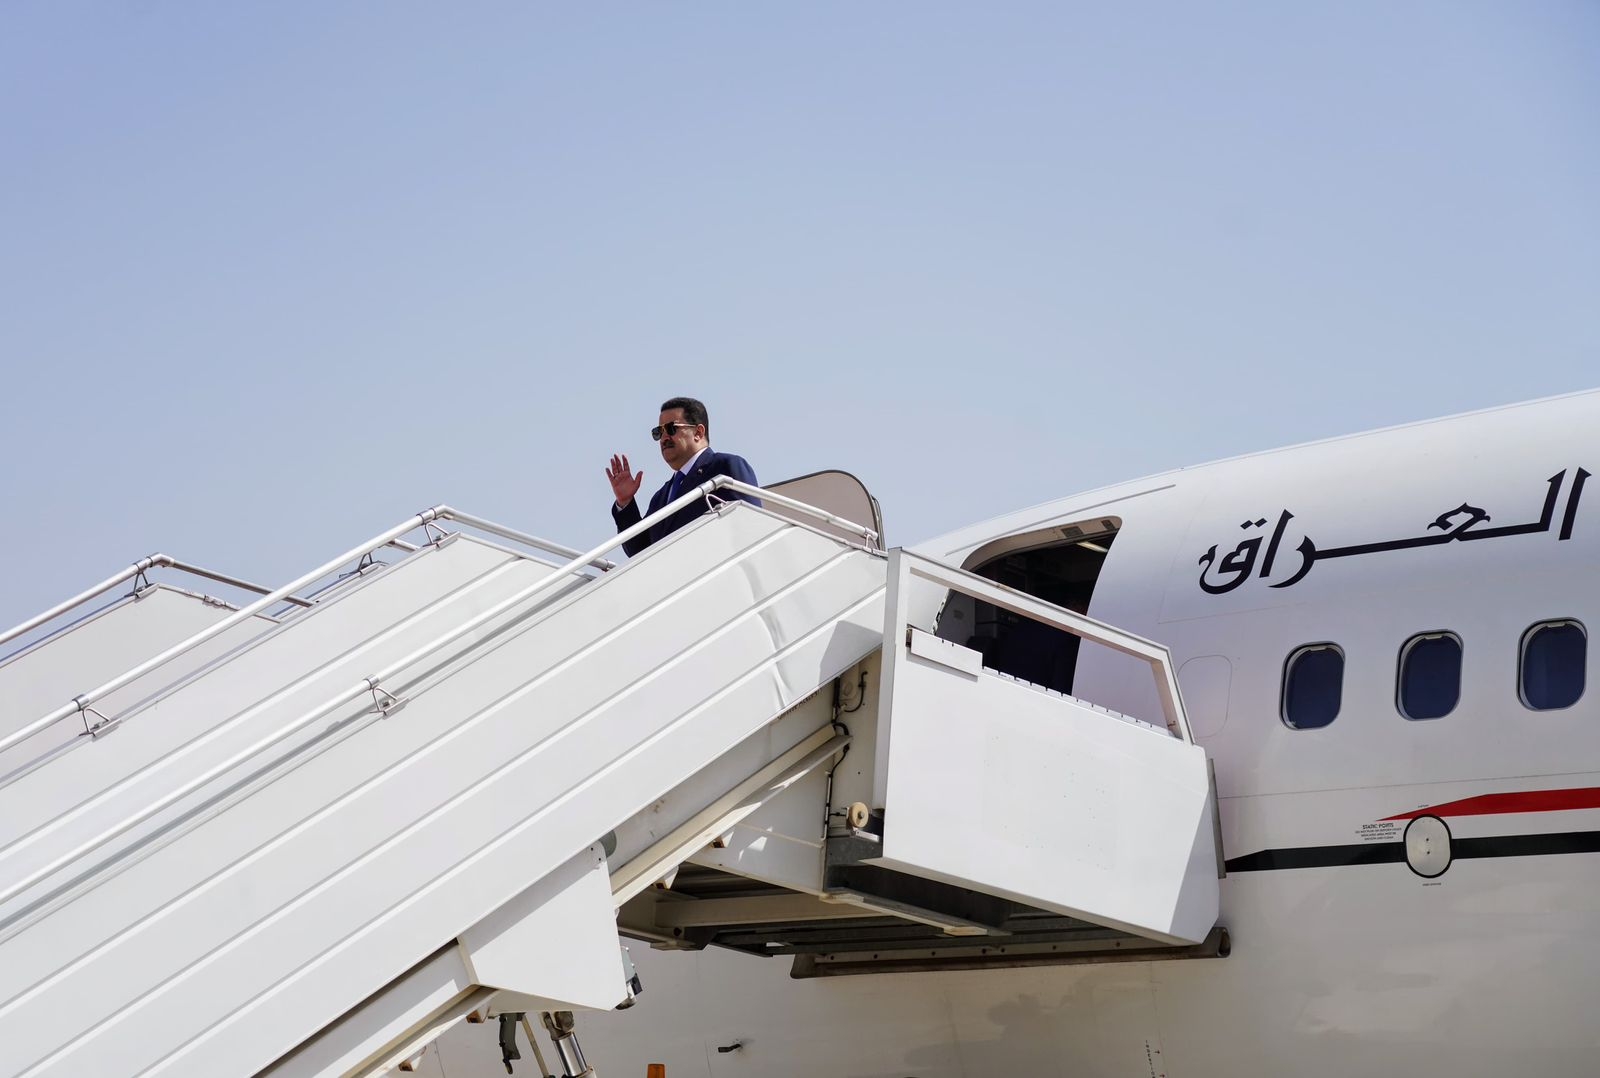 السوداني يغادر العاصمة بغداد متوجهاً إلى الأردن